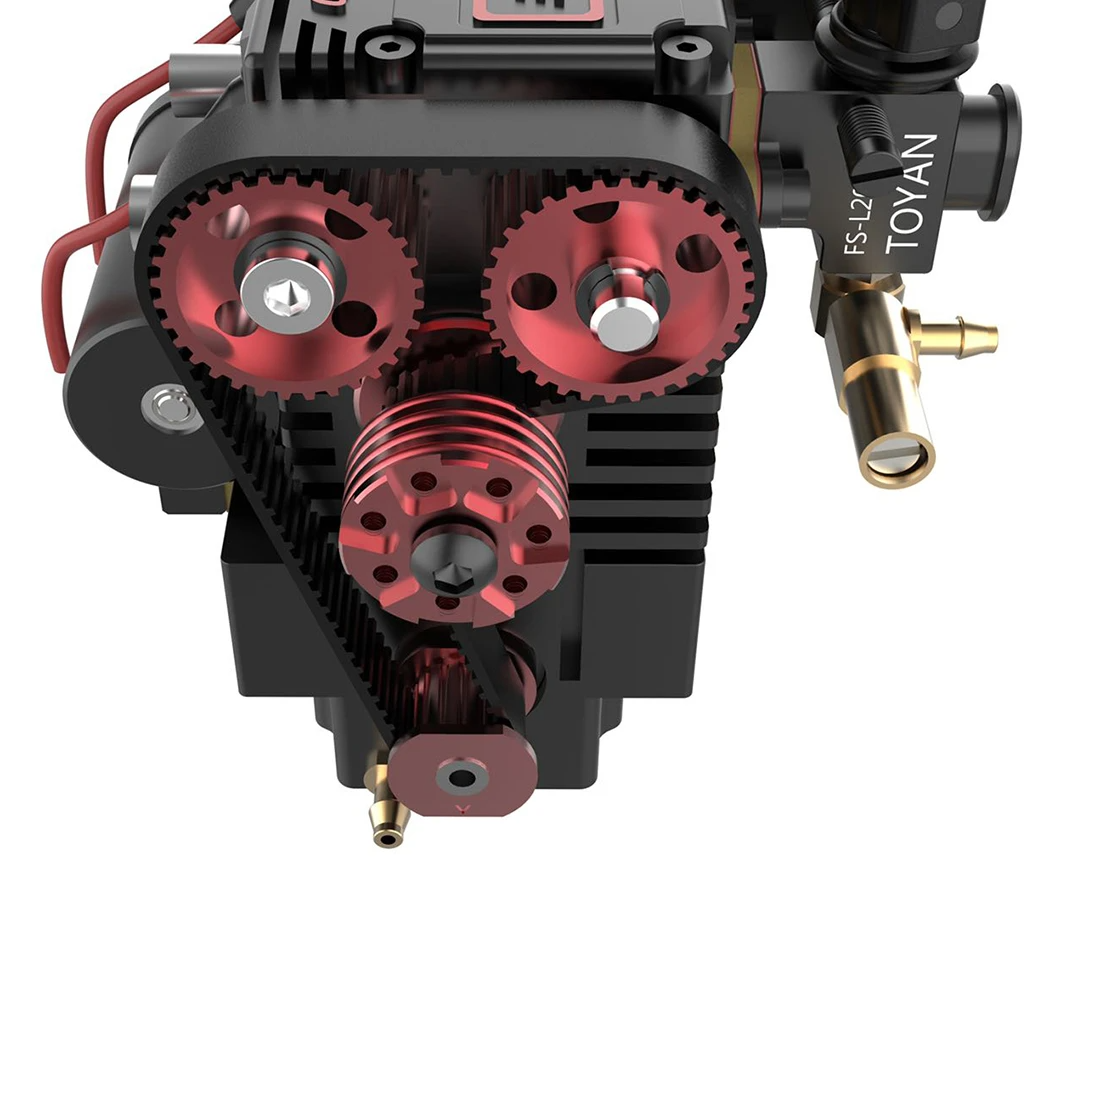 4 cylinder nitro engine